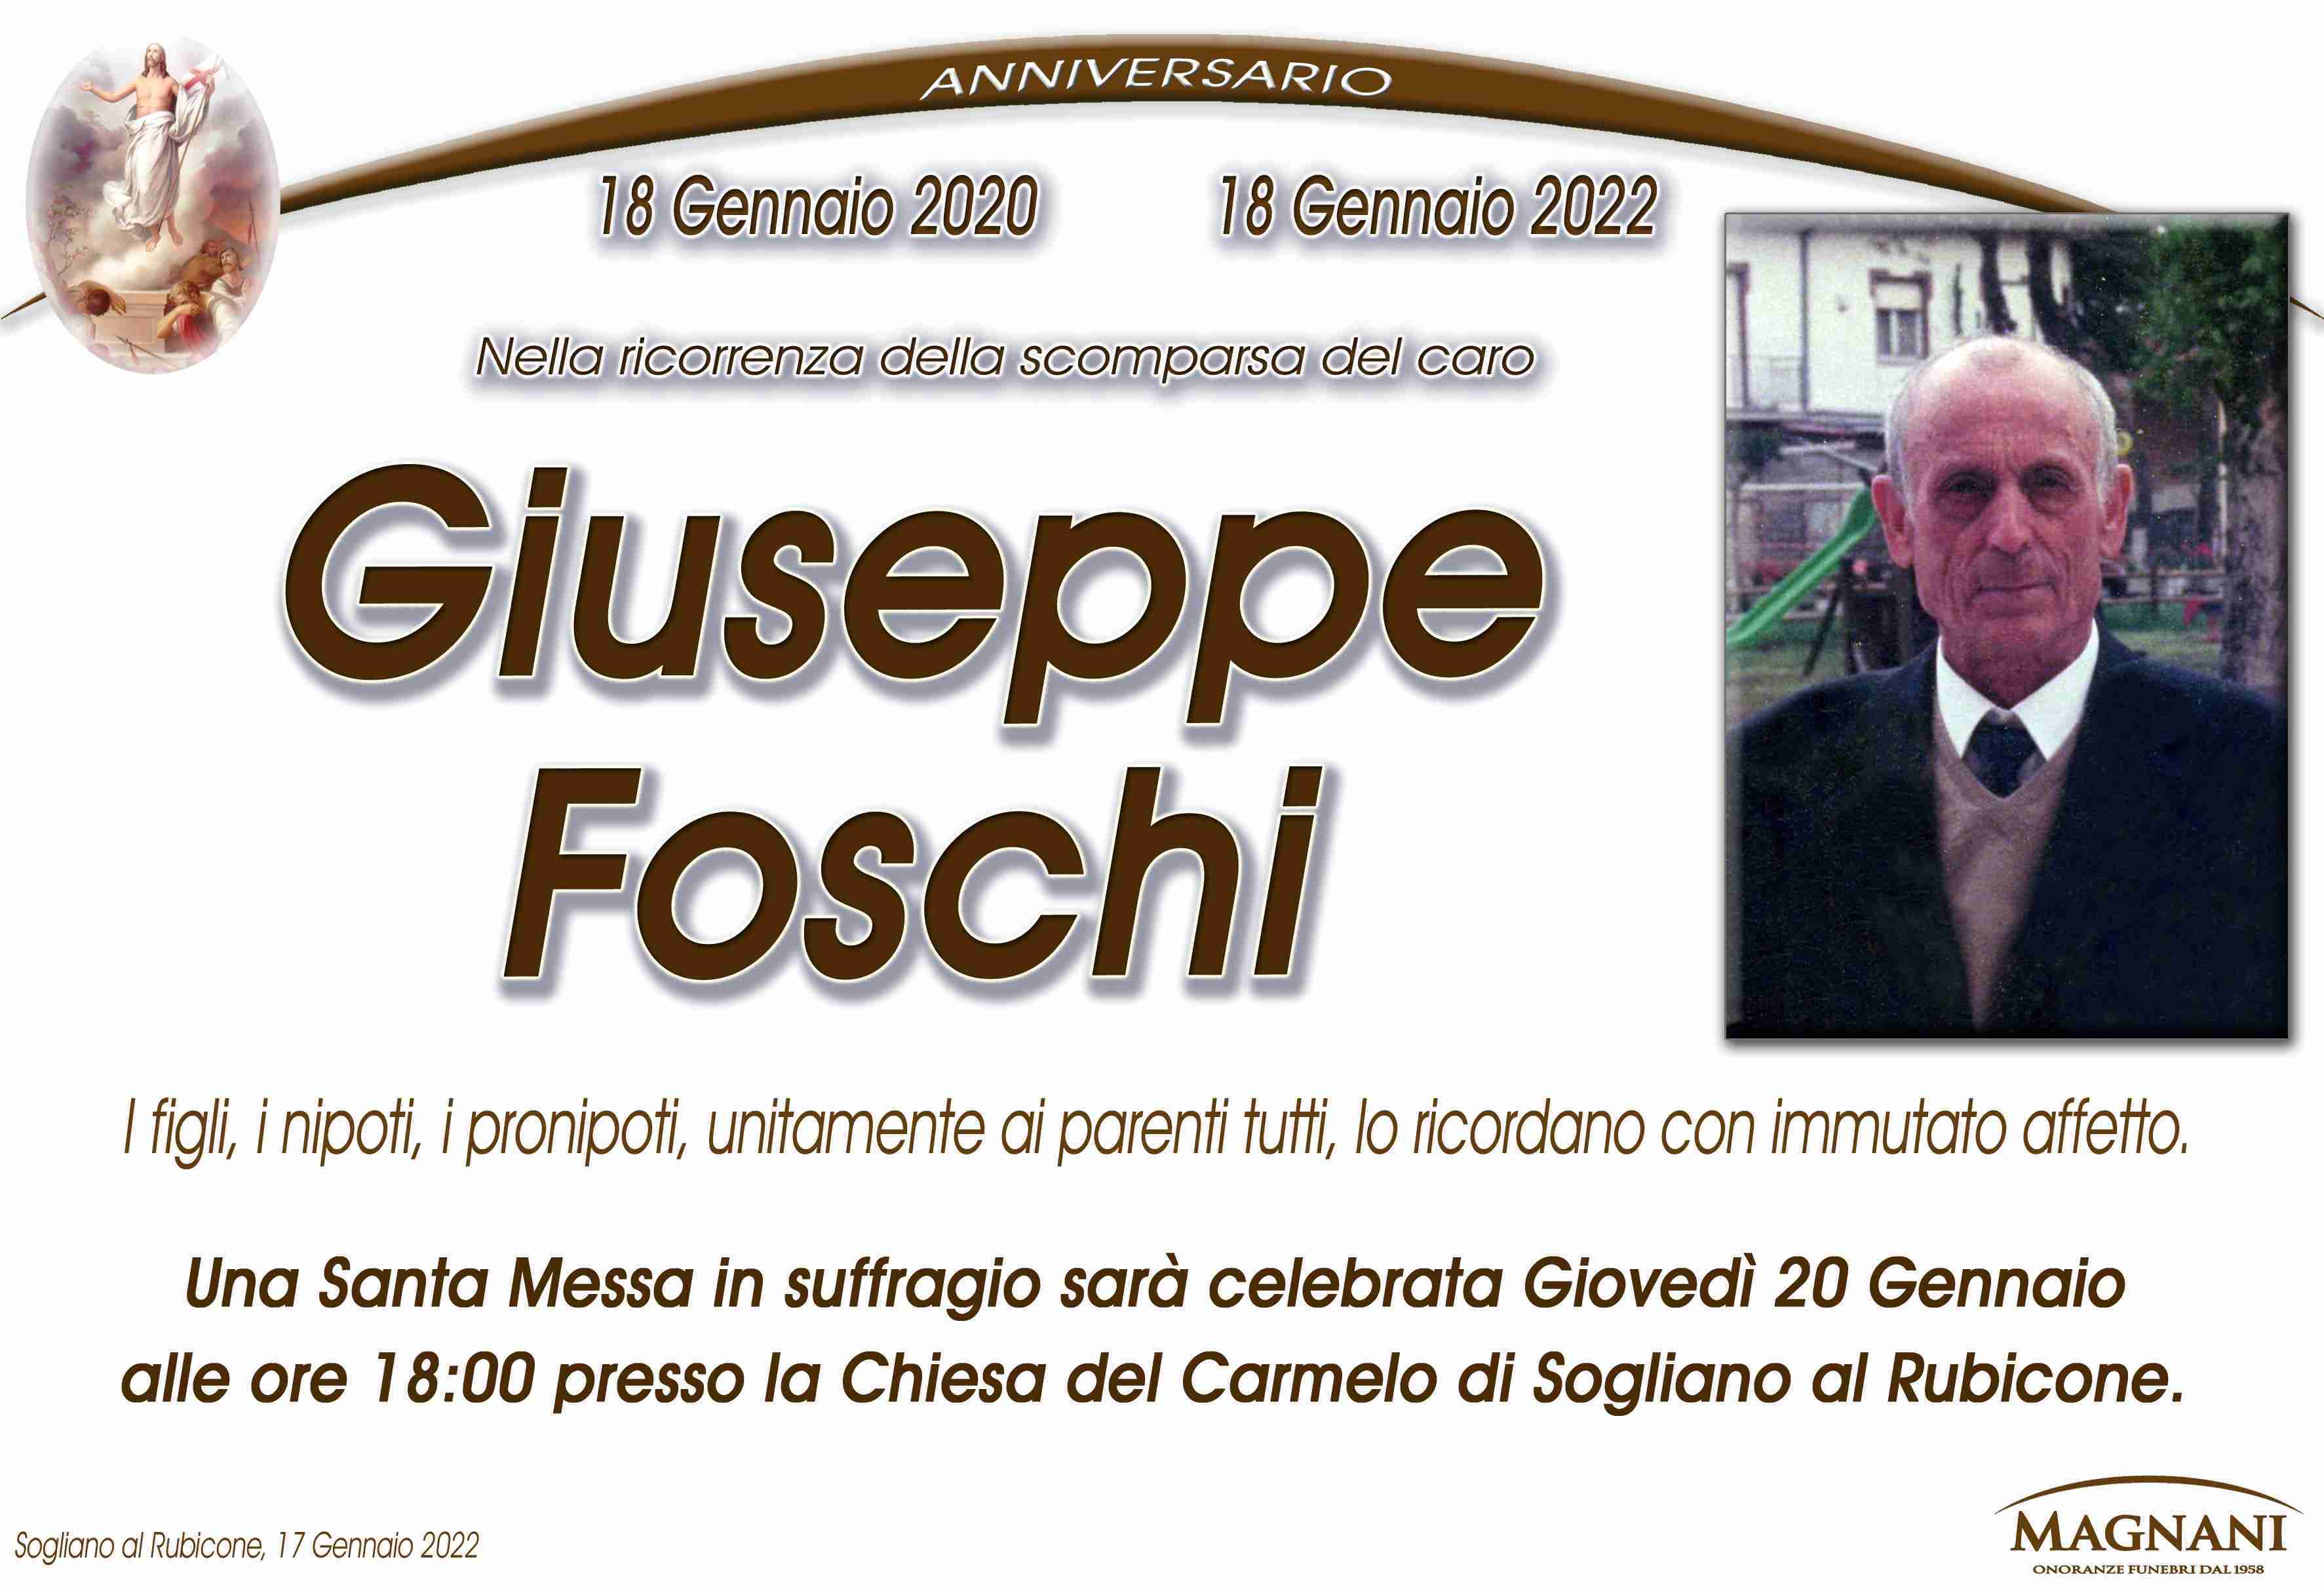 Giuseppe Foschi